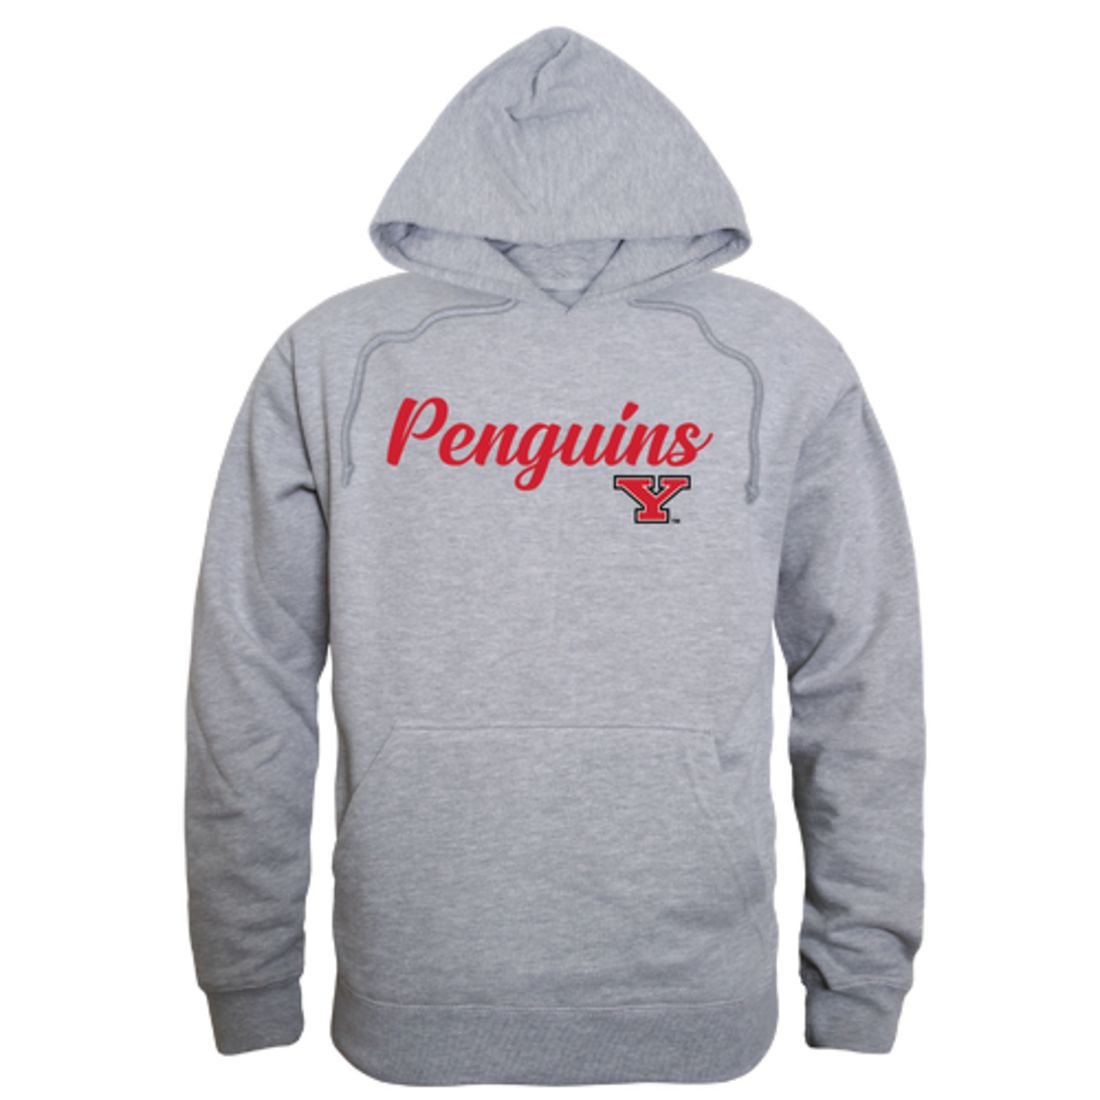 YSU Youngstown State University Penguins Mens Script Hoodie Sweatshirt Black-Campus-Wardrobe